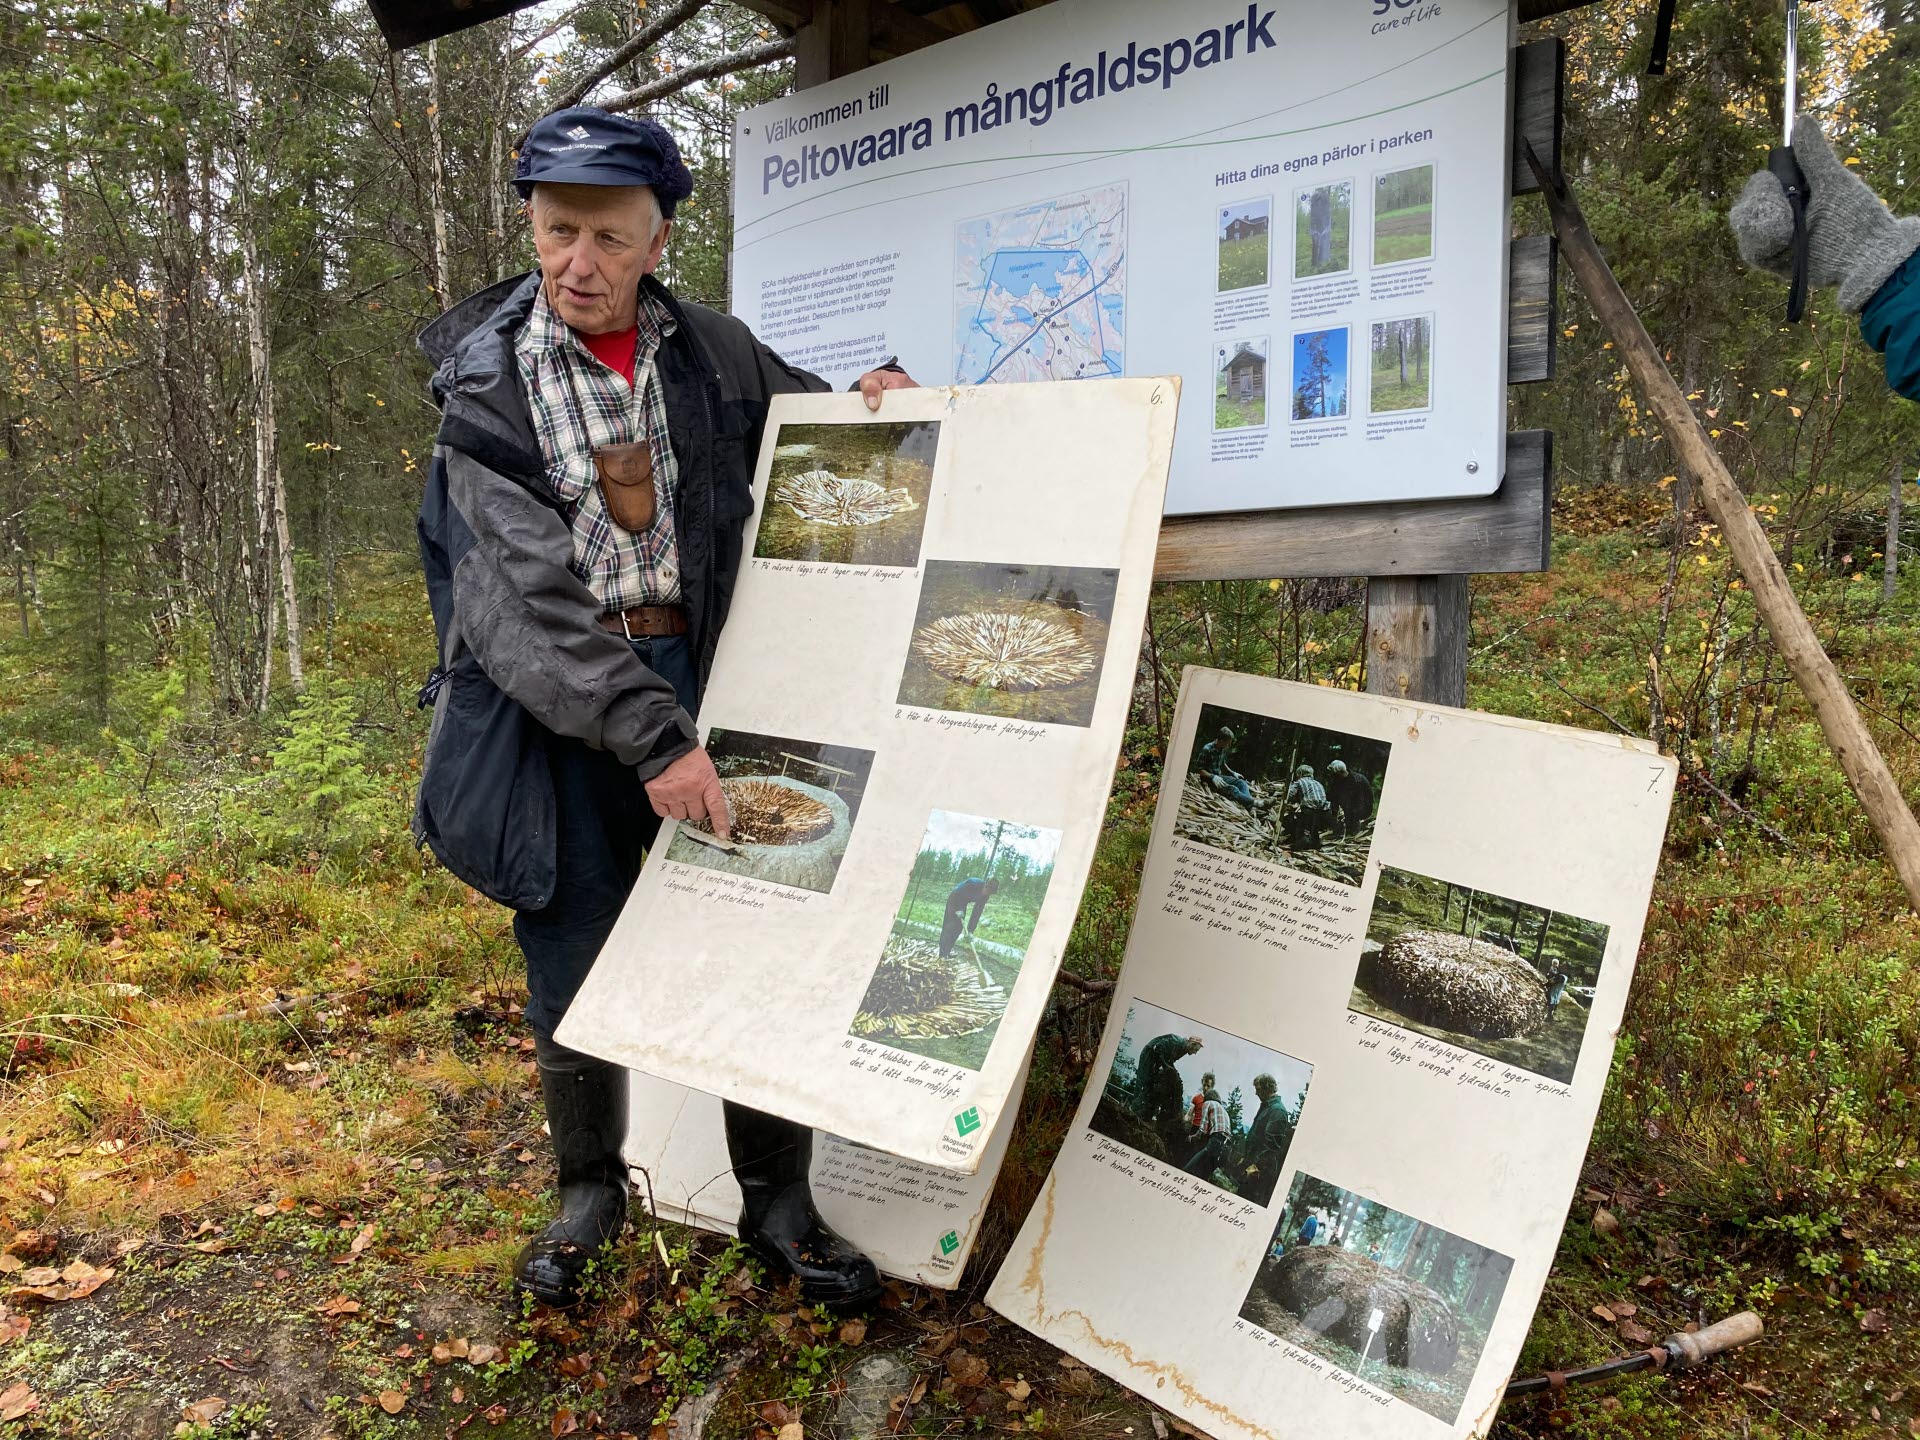 Årsmöte i Nietsak-Peltovaara mångfaldspark